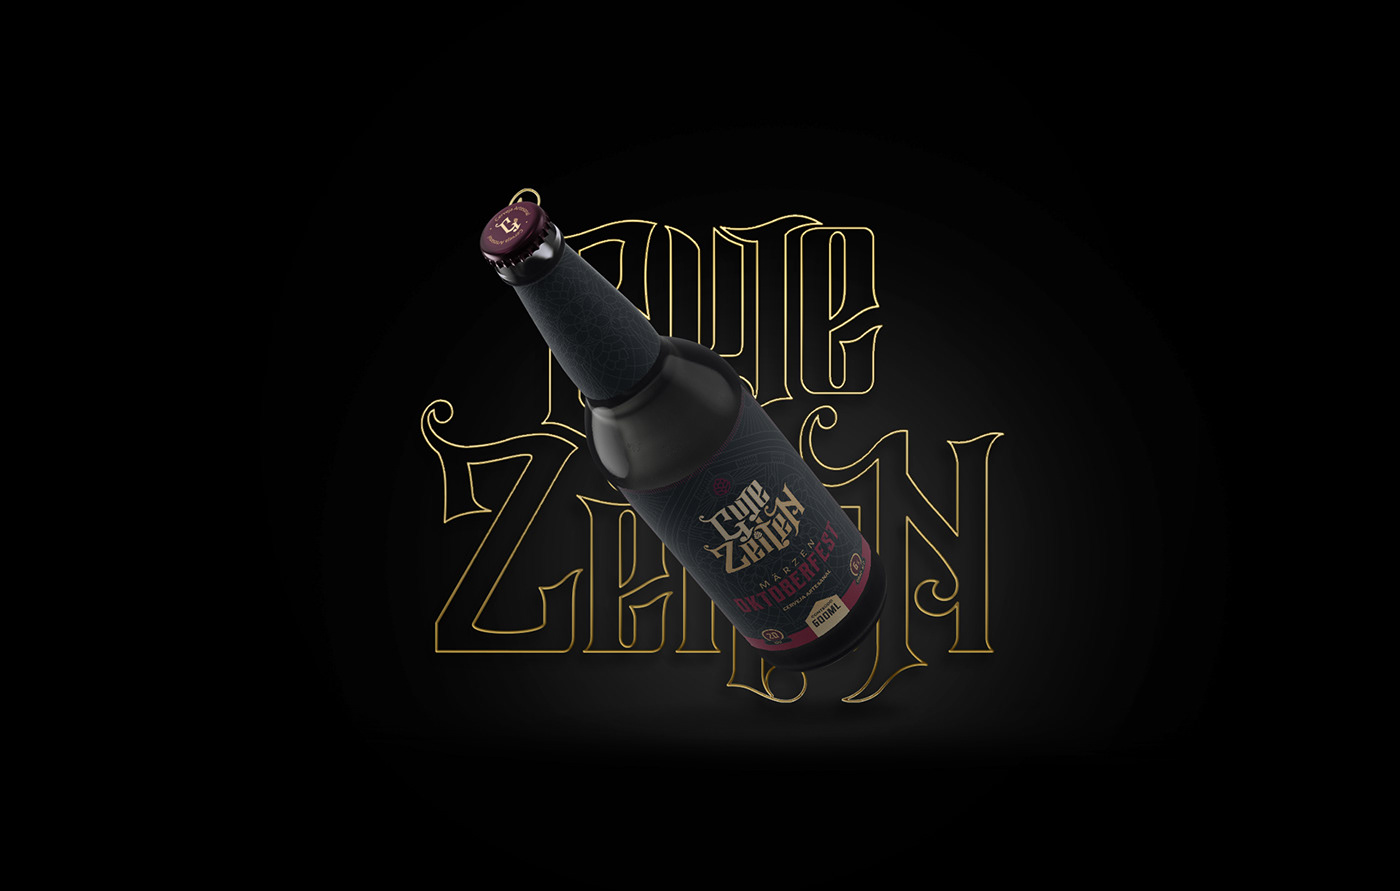 Rótulo da cerveja Gute Zeiten aplicado a garrafa. Fundo escuro com o logo em dourado.